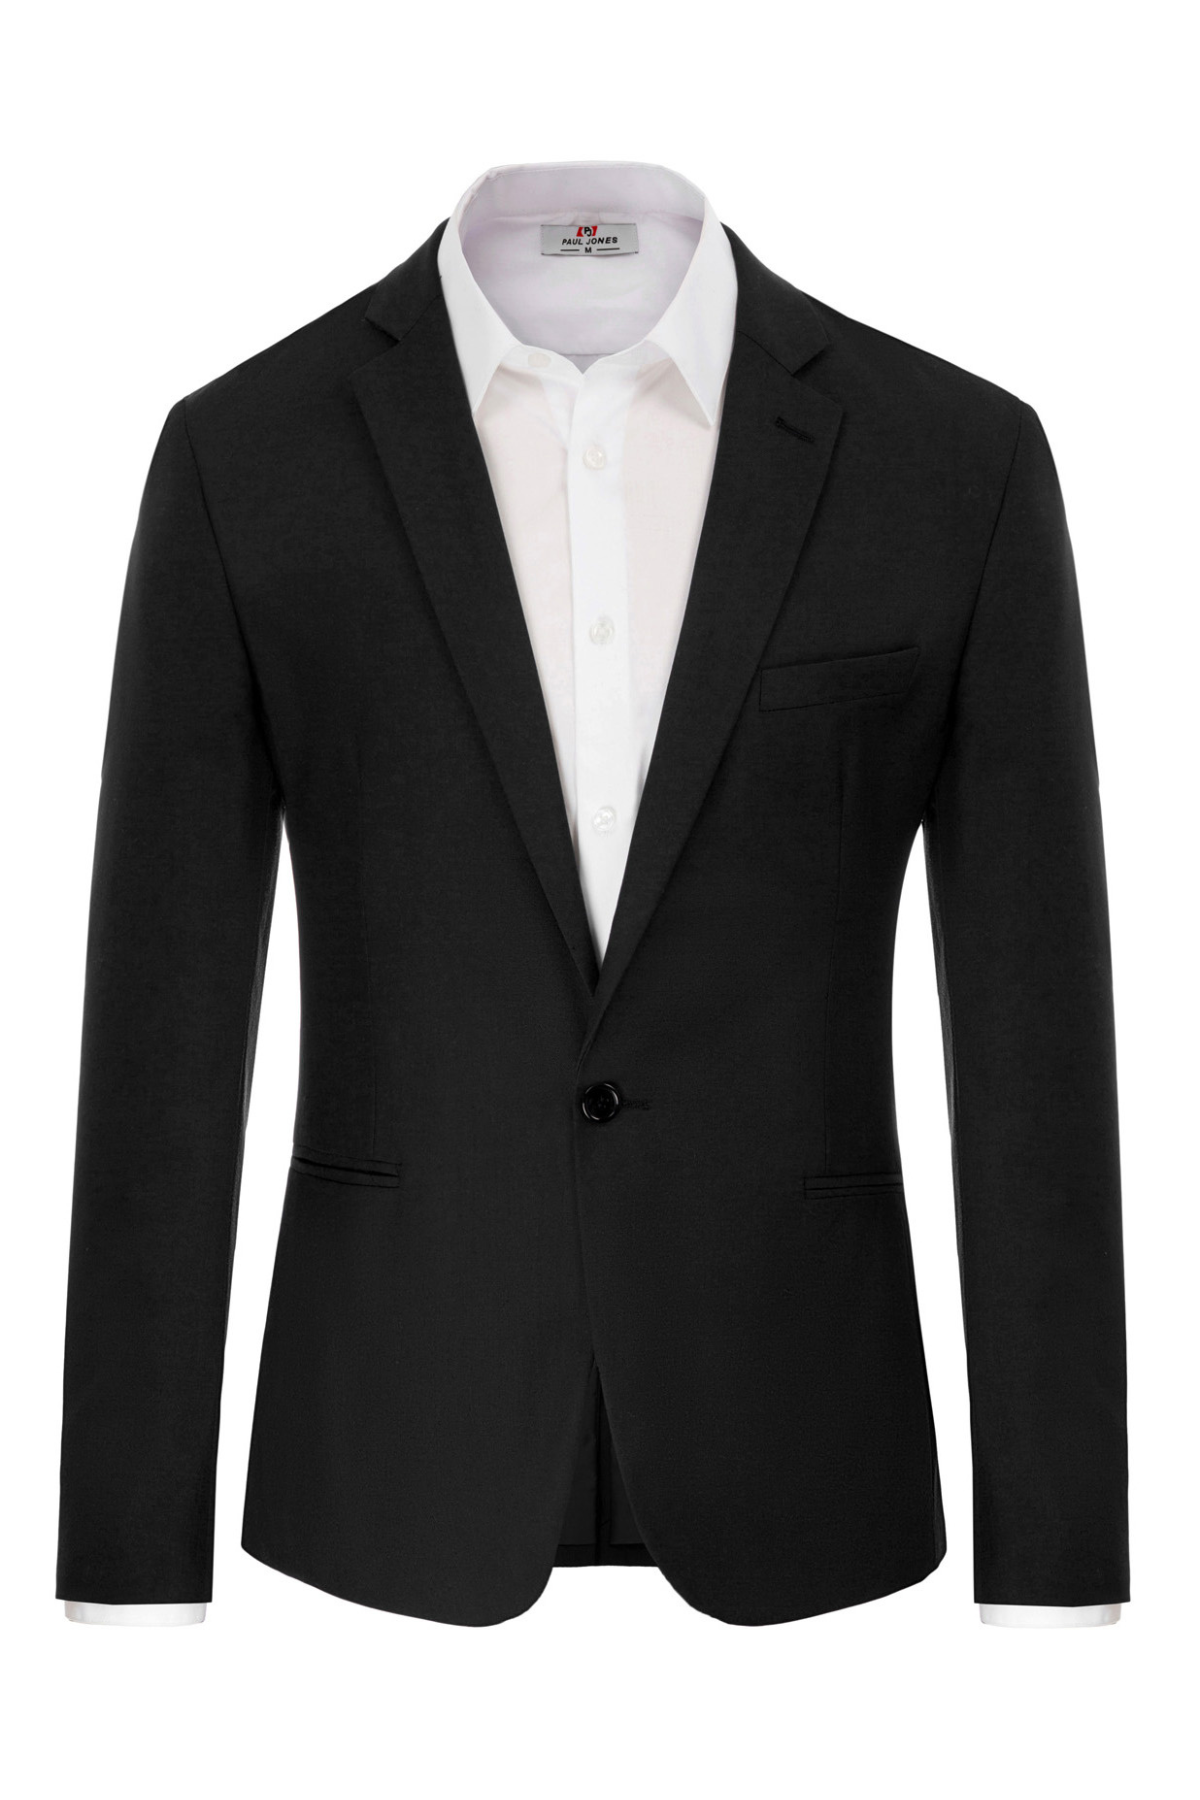 Mens Slim Fit One Button Blazer Jacket Casual Suit | PJ Paul Jones